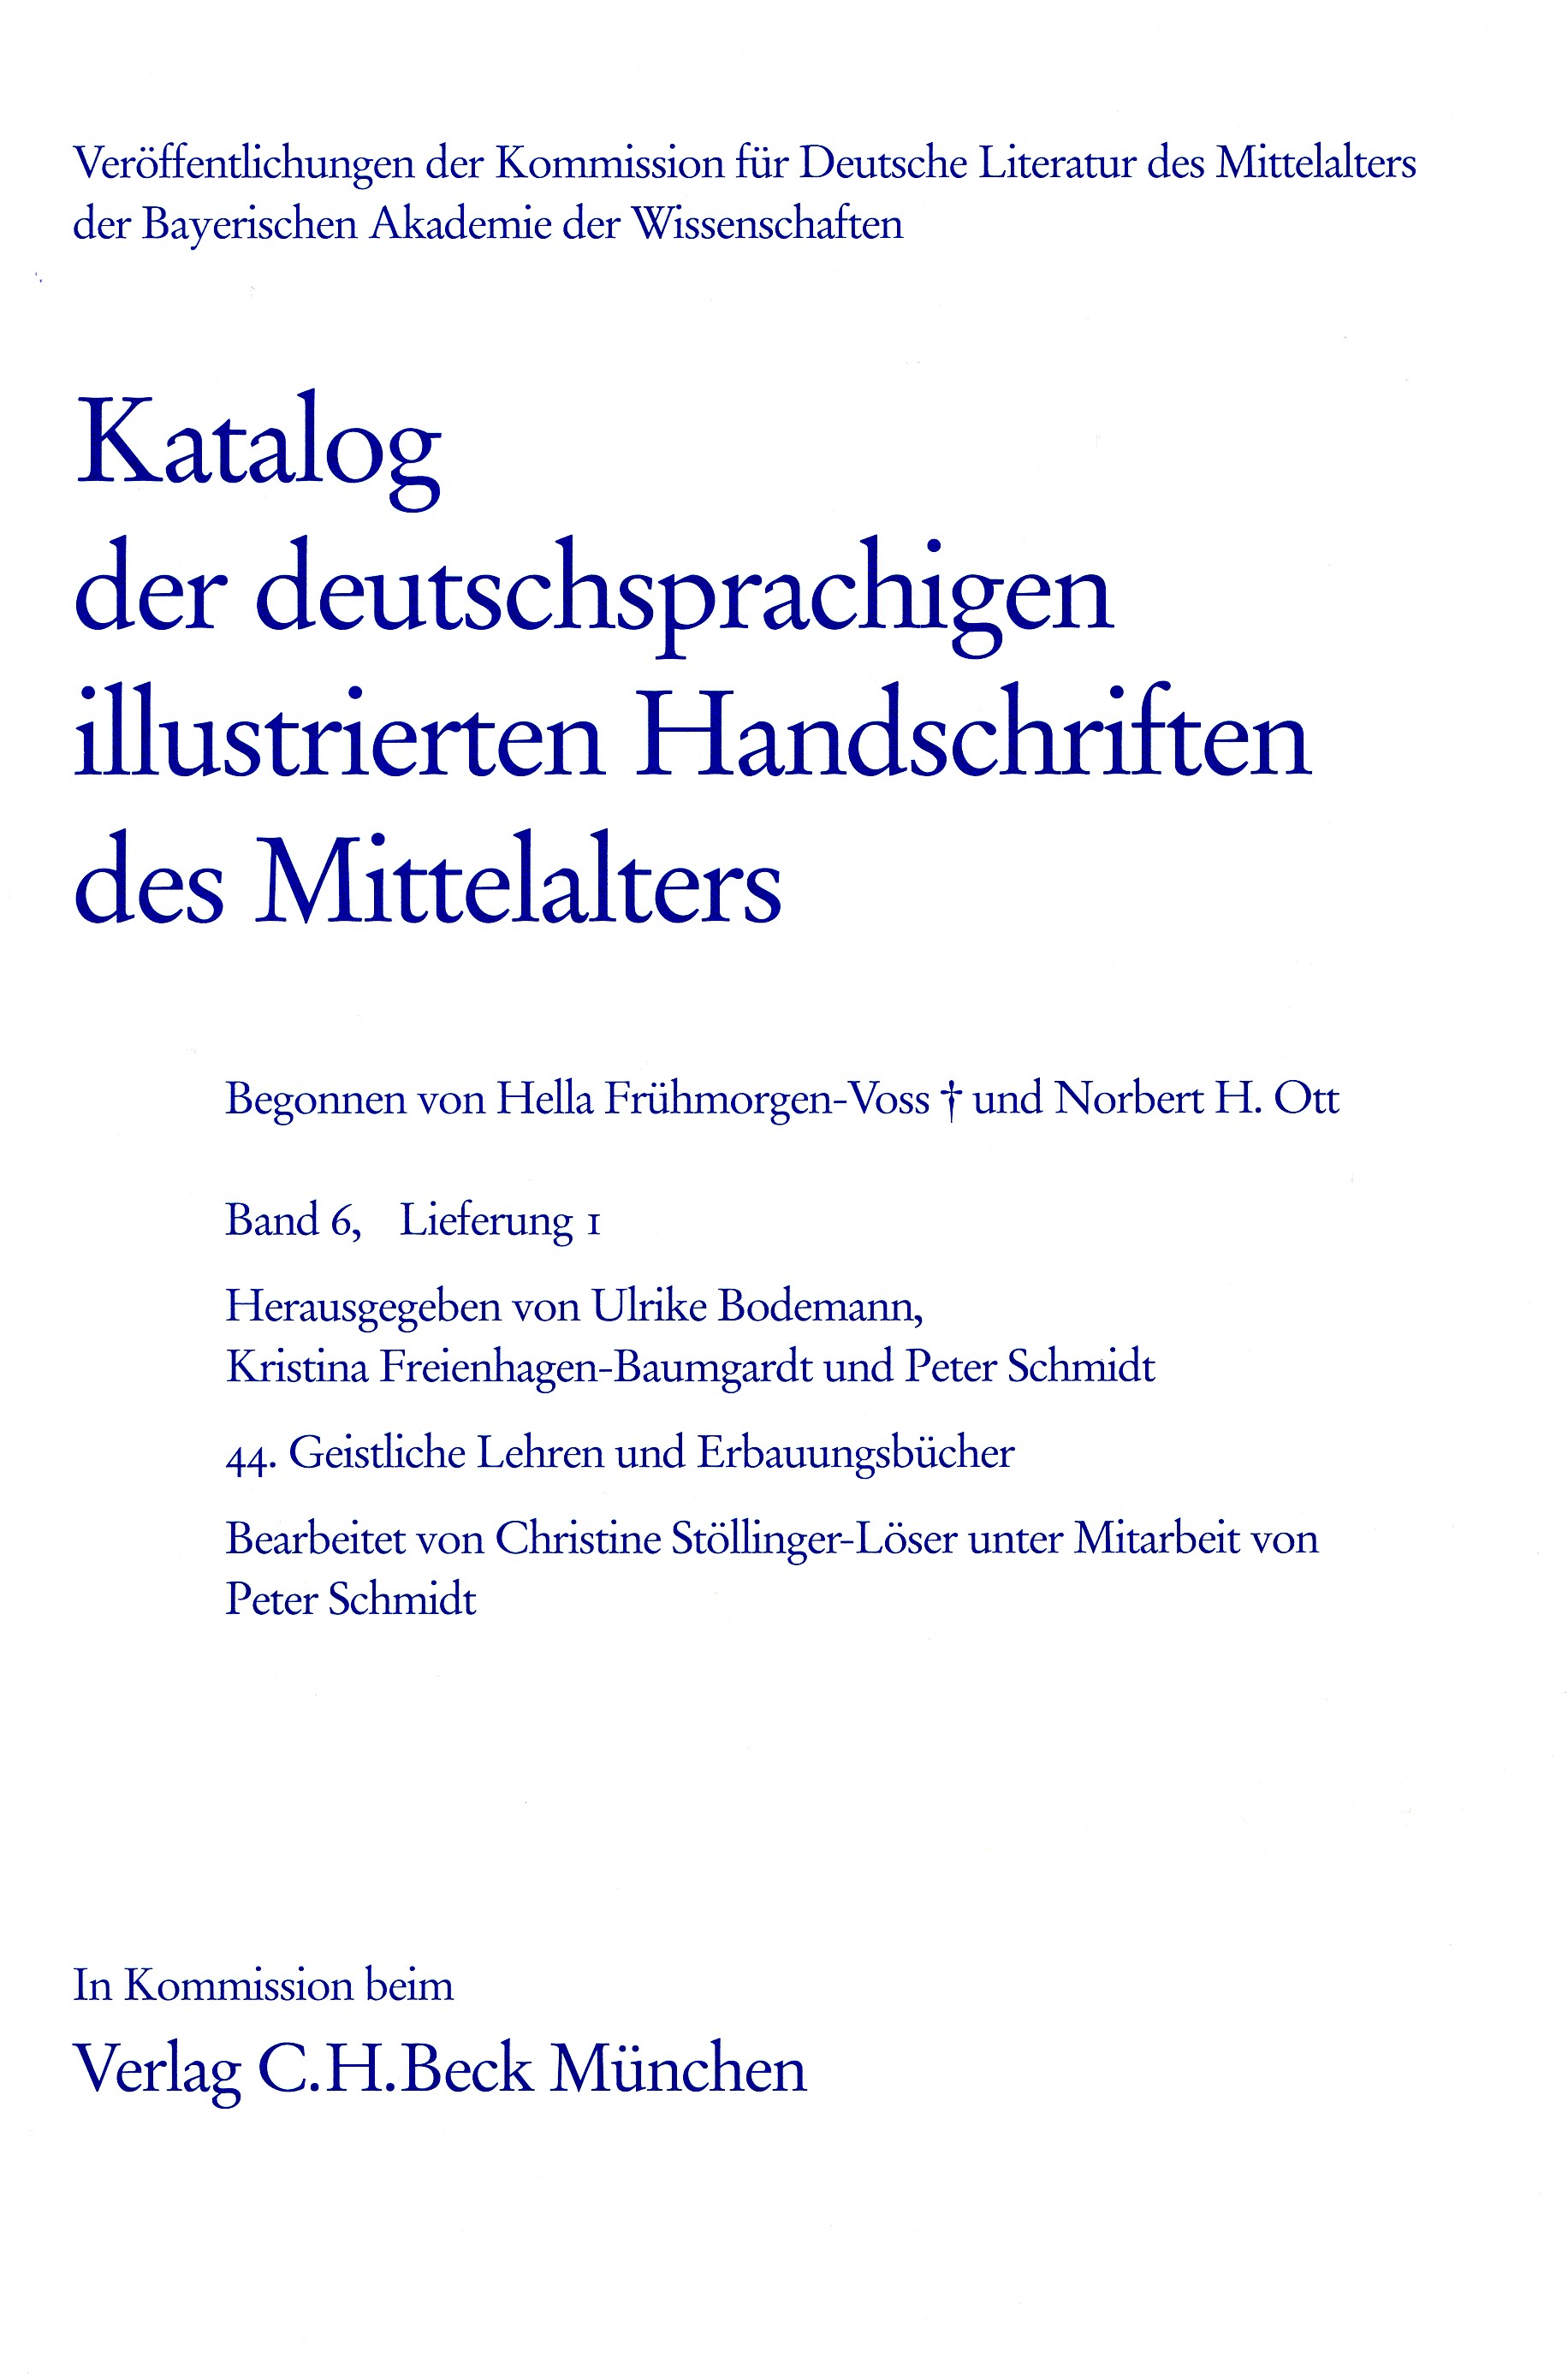 Cover: Bodemann, Ulrike /  Freienhagen-Baumgardt, Kristina / Schmidt, Peter, Katalog der deutschsprachigen illustrierten Handschriften des Mittelalters Band 6, Lfg. 1